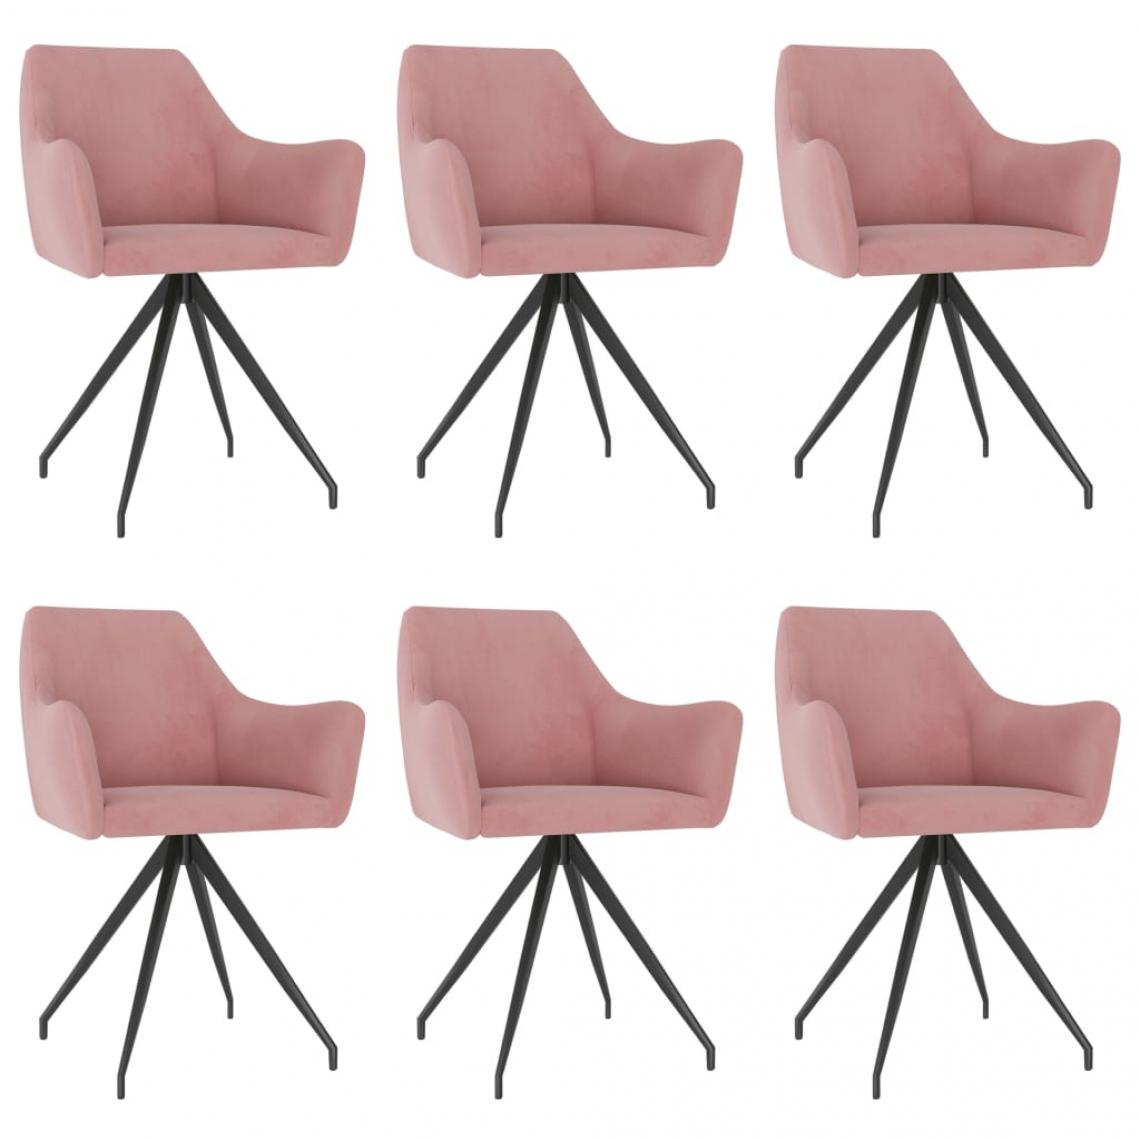 Decoshop26 - Lot de 6 chaises de salle à manger cuisine design moderne velours rose CDS022790 - Chaises